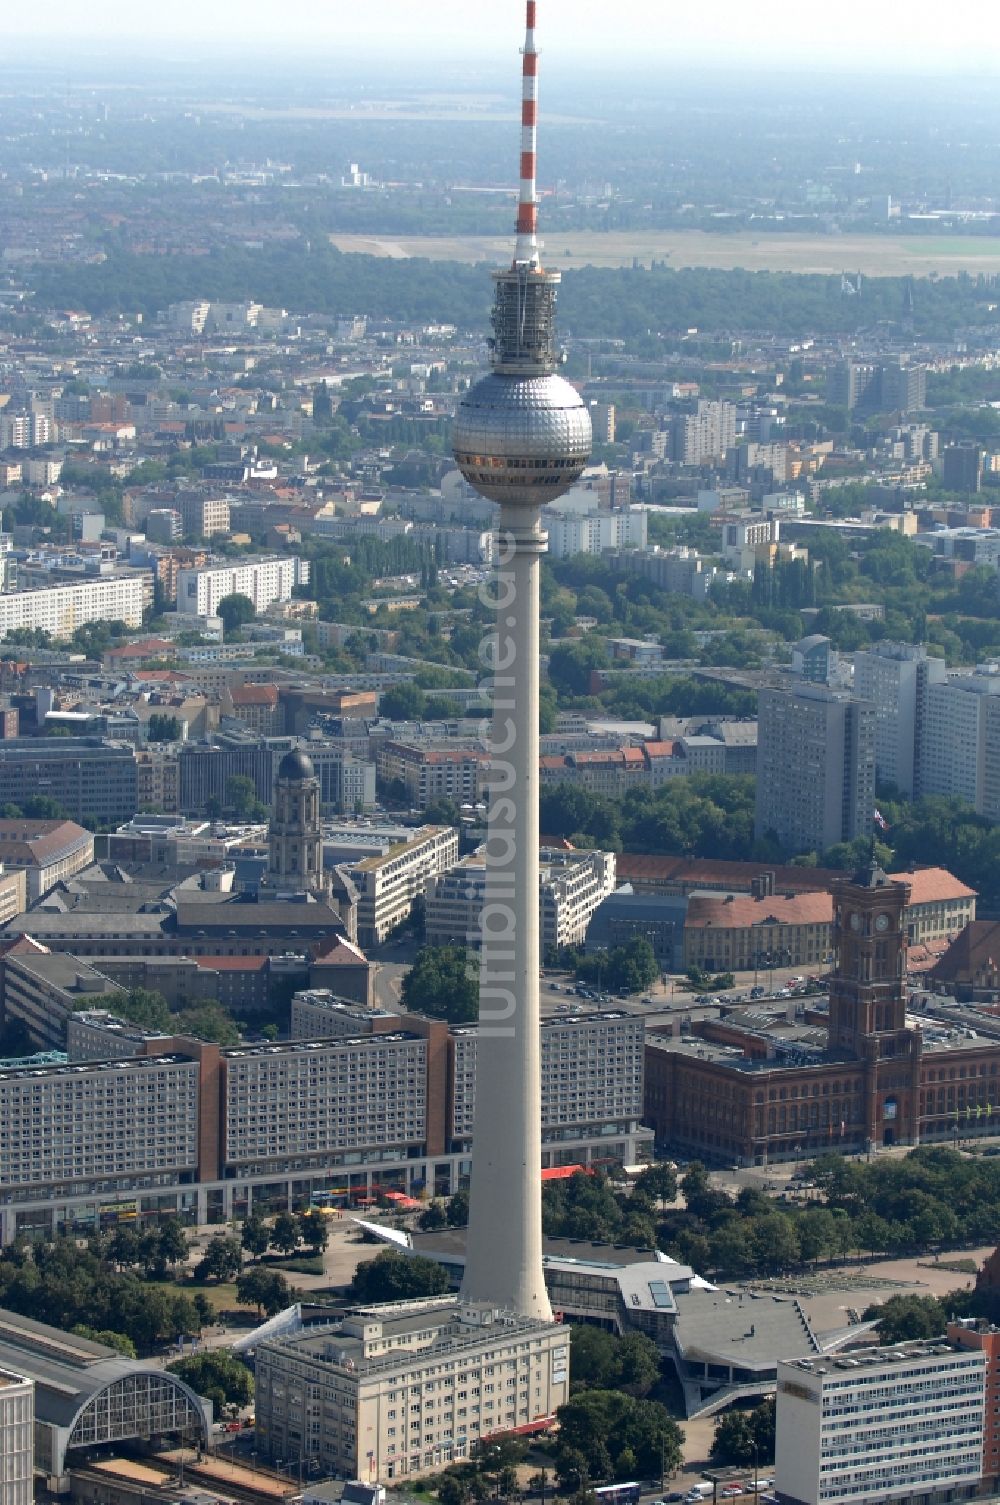 Berlin von oben - Stadtzentrum im Innenstadtbereich am Berliner Fernsehturm am Alexanderplatz in Berlin